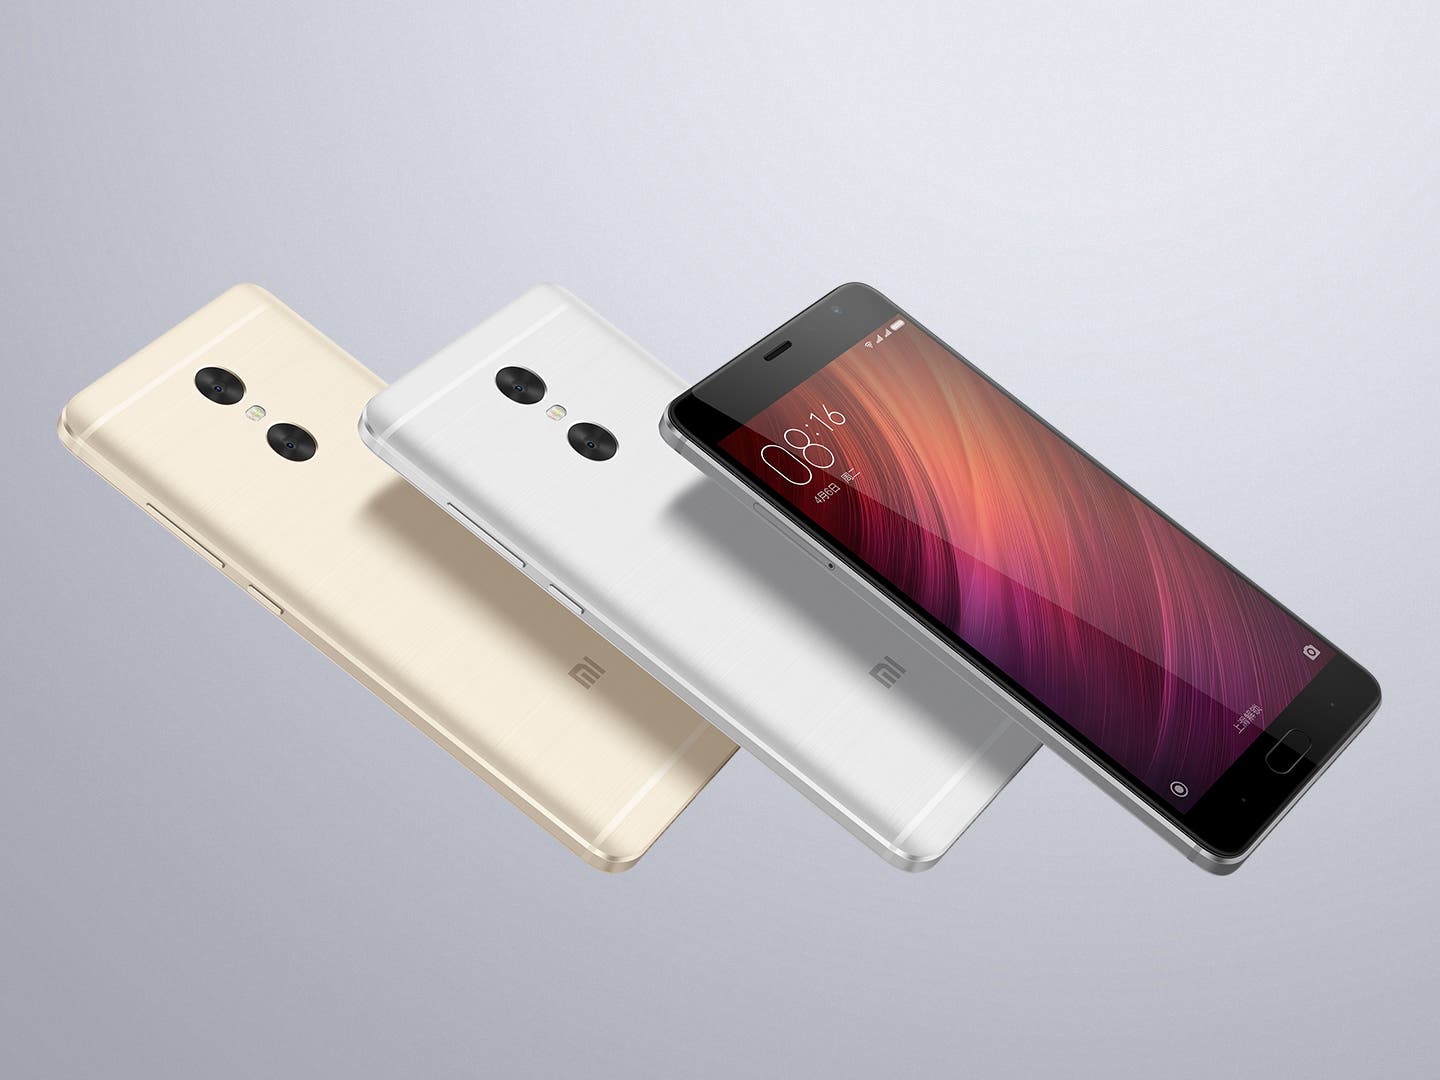 Best Helio X20 Smartphones: Xiaomi Redmi Pro